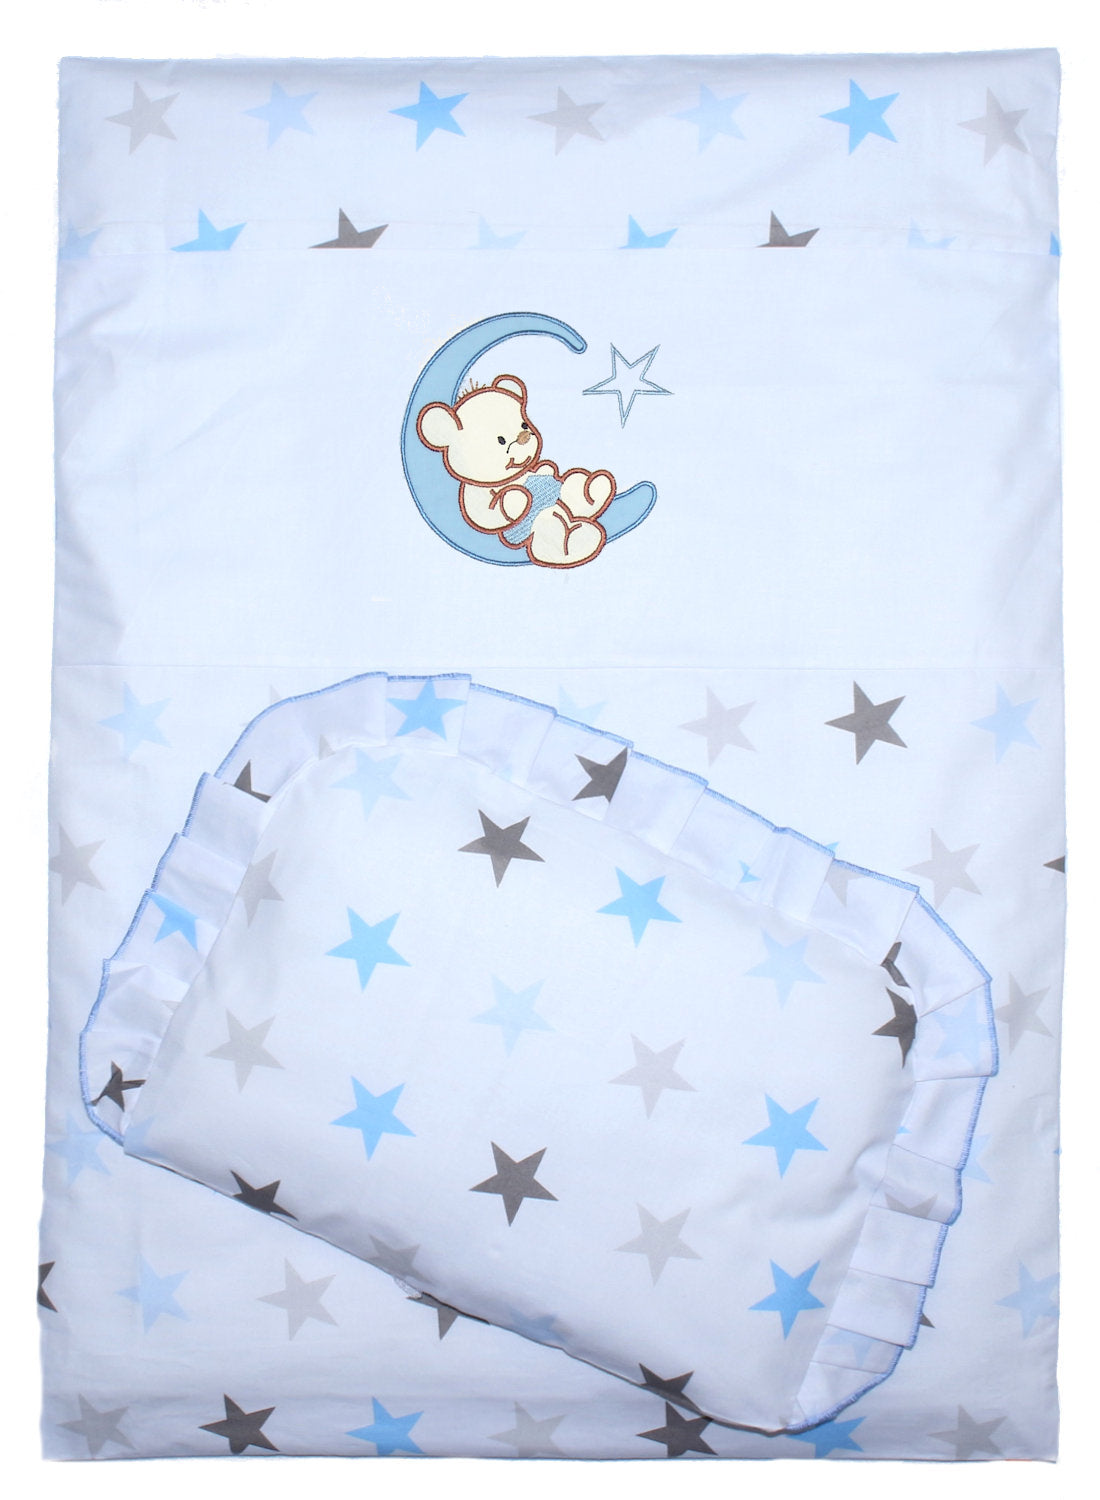 2- 4tlg Kinderwagenset - Bärchen Mond - Star Blau - Bettwäsche für Kinderwagen Bezüge Decke Kissen